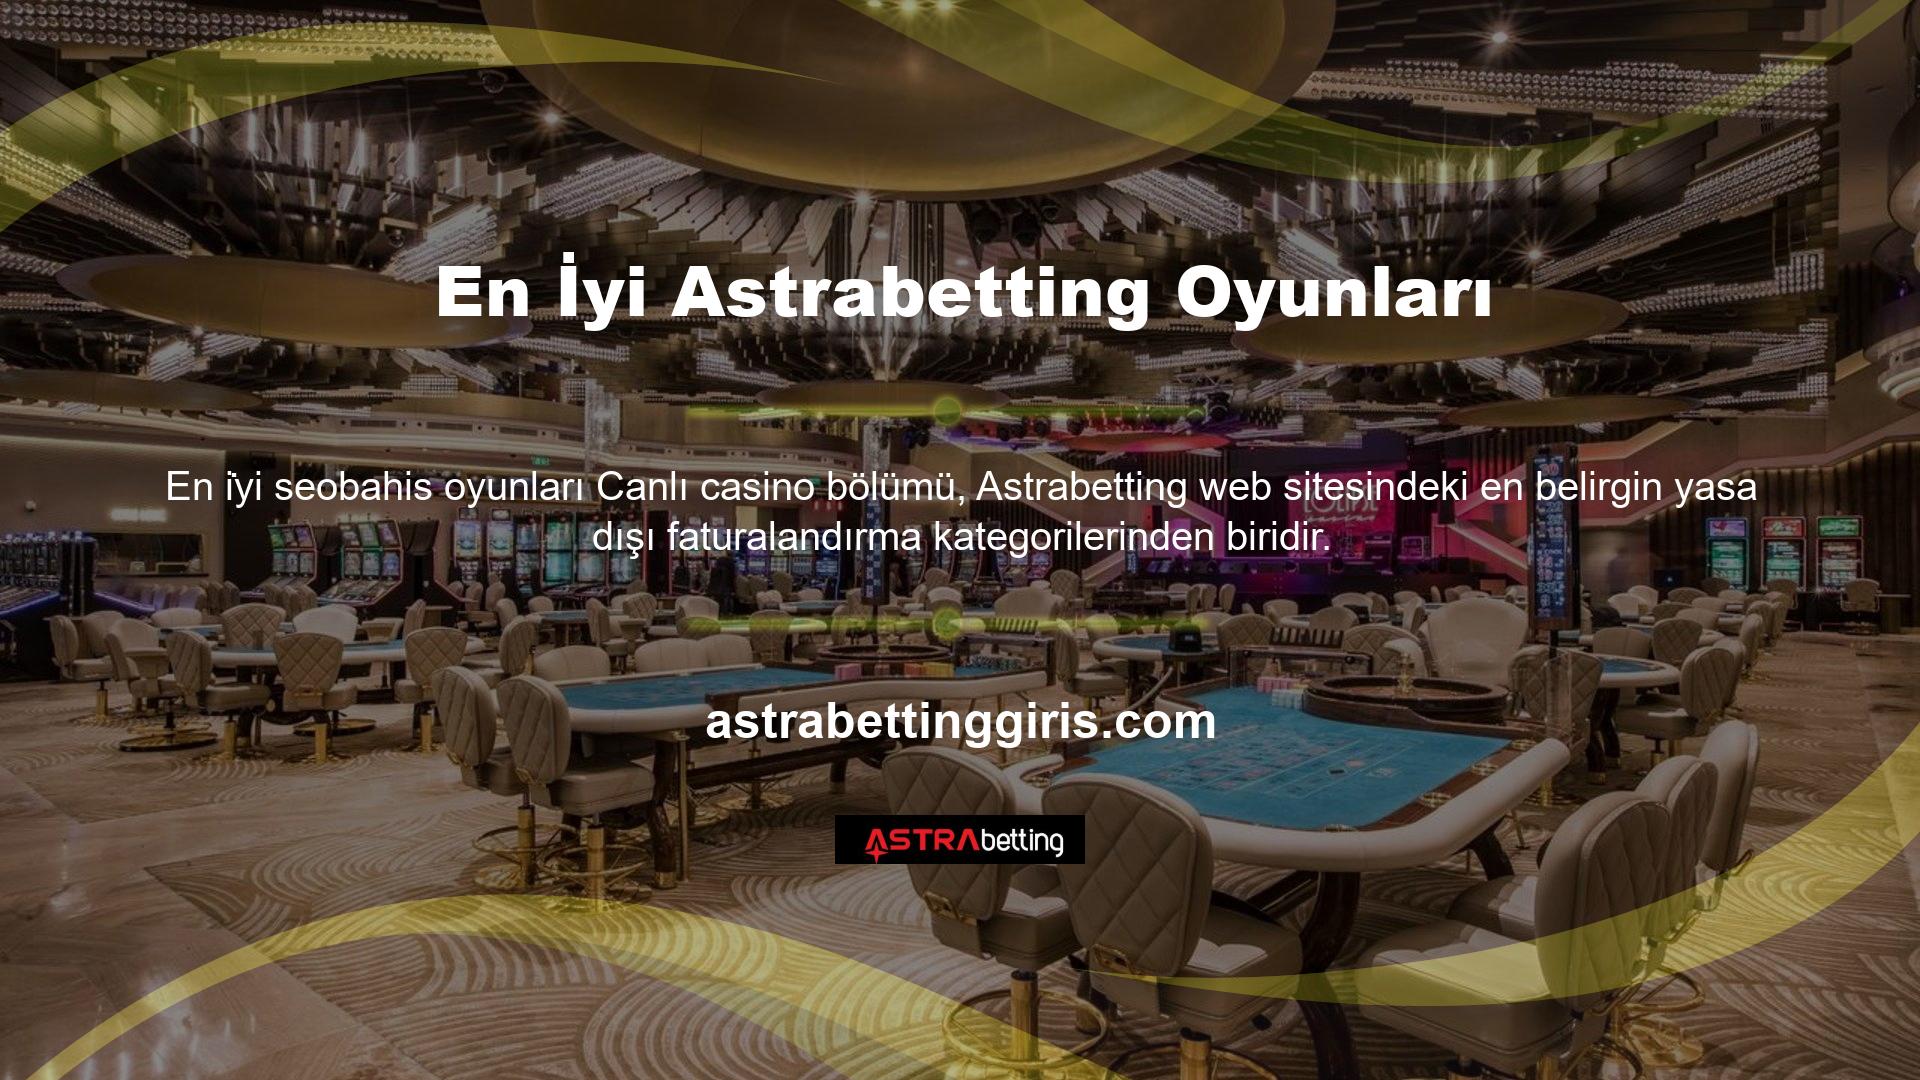 Özellikle lobilerin ve yerleşik casinoların yıllar önce yasaklandığı Türkiye'de, Astrabetting gibi premium casino siteleri casino meraklıları arasında yüksek talep görüyor